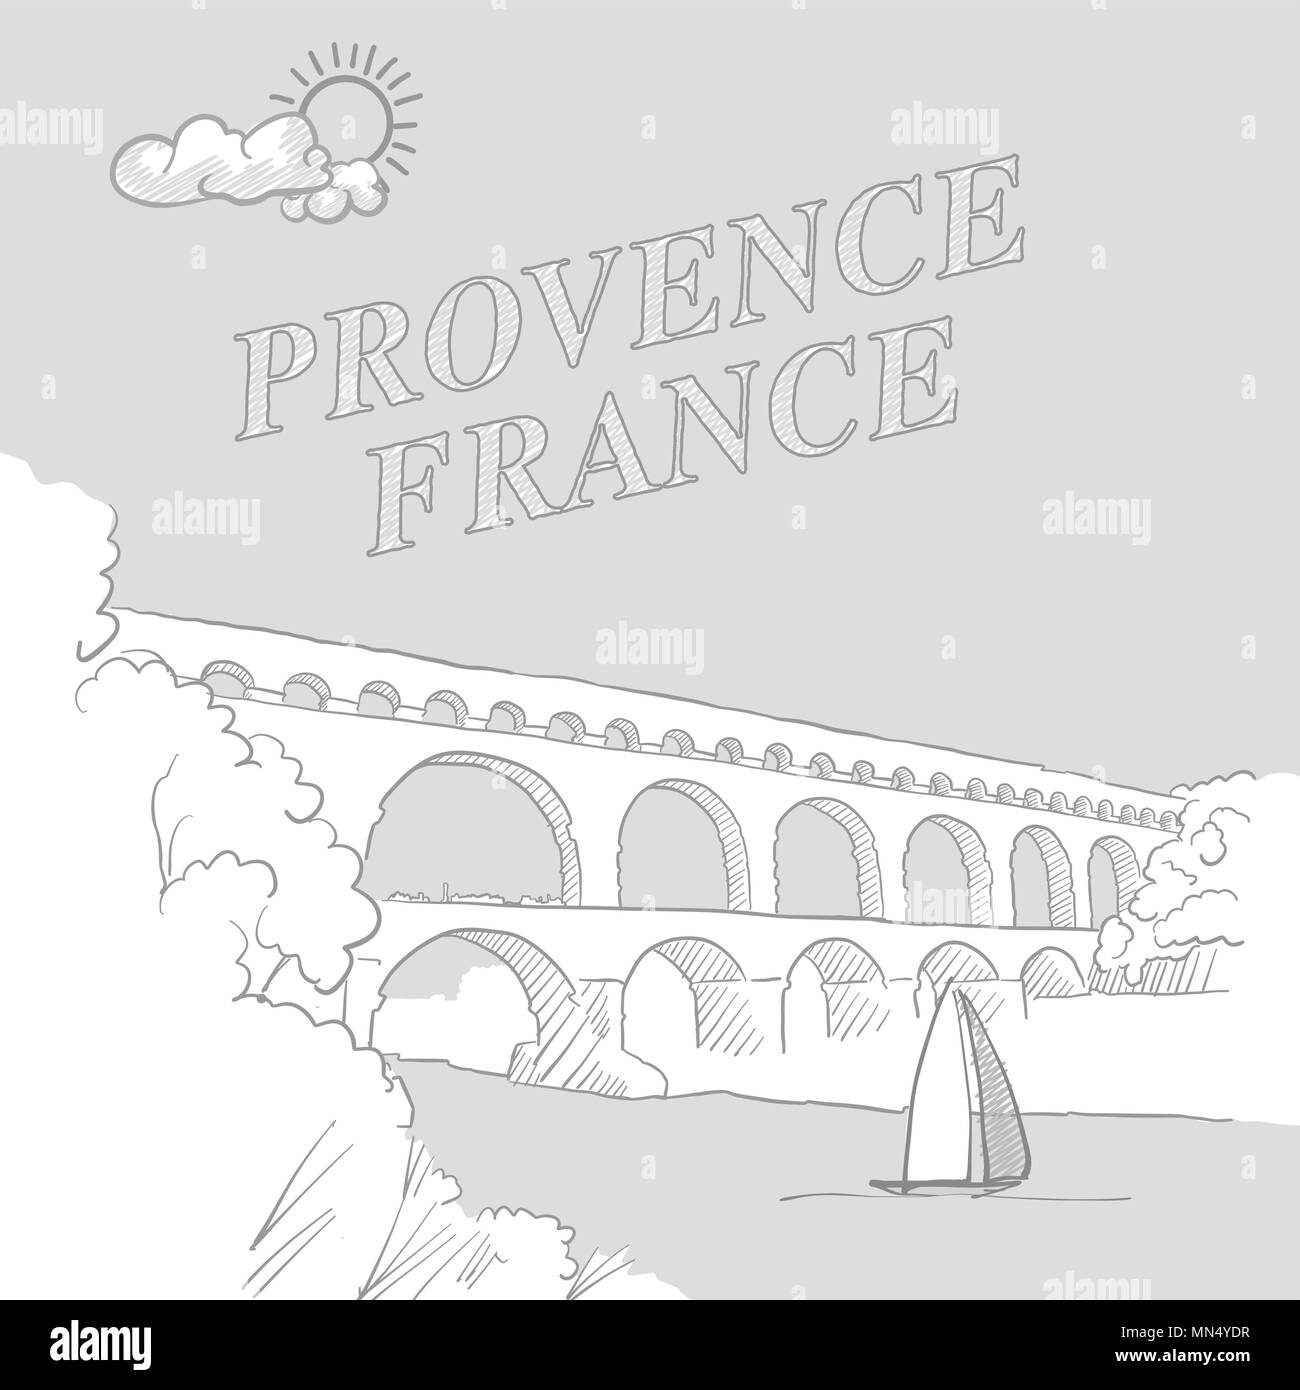 Provence, Francia travel marketing cubierta, dibujados a mano dibujo vectorial Ilustración del Vector